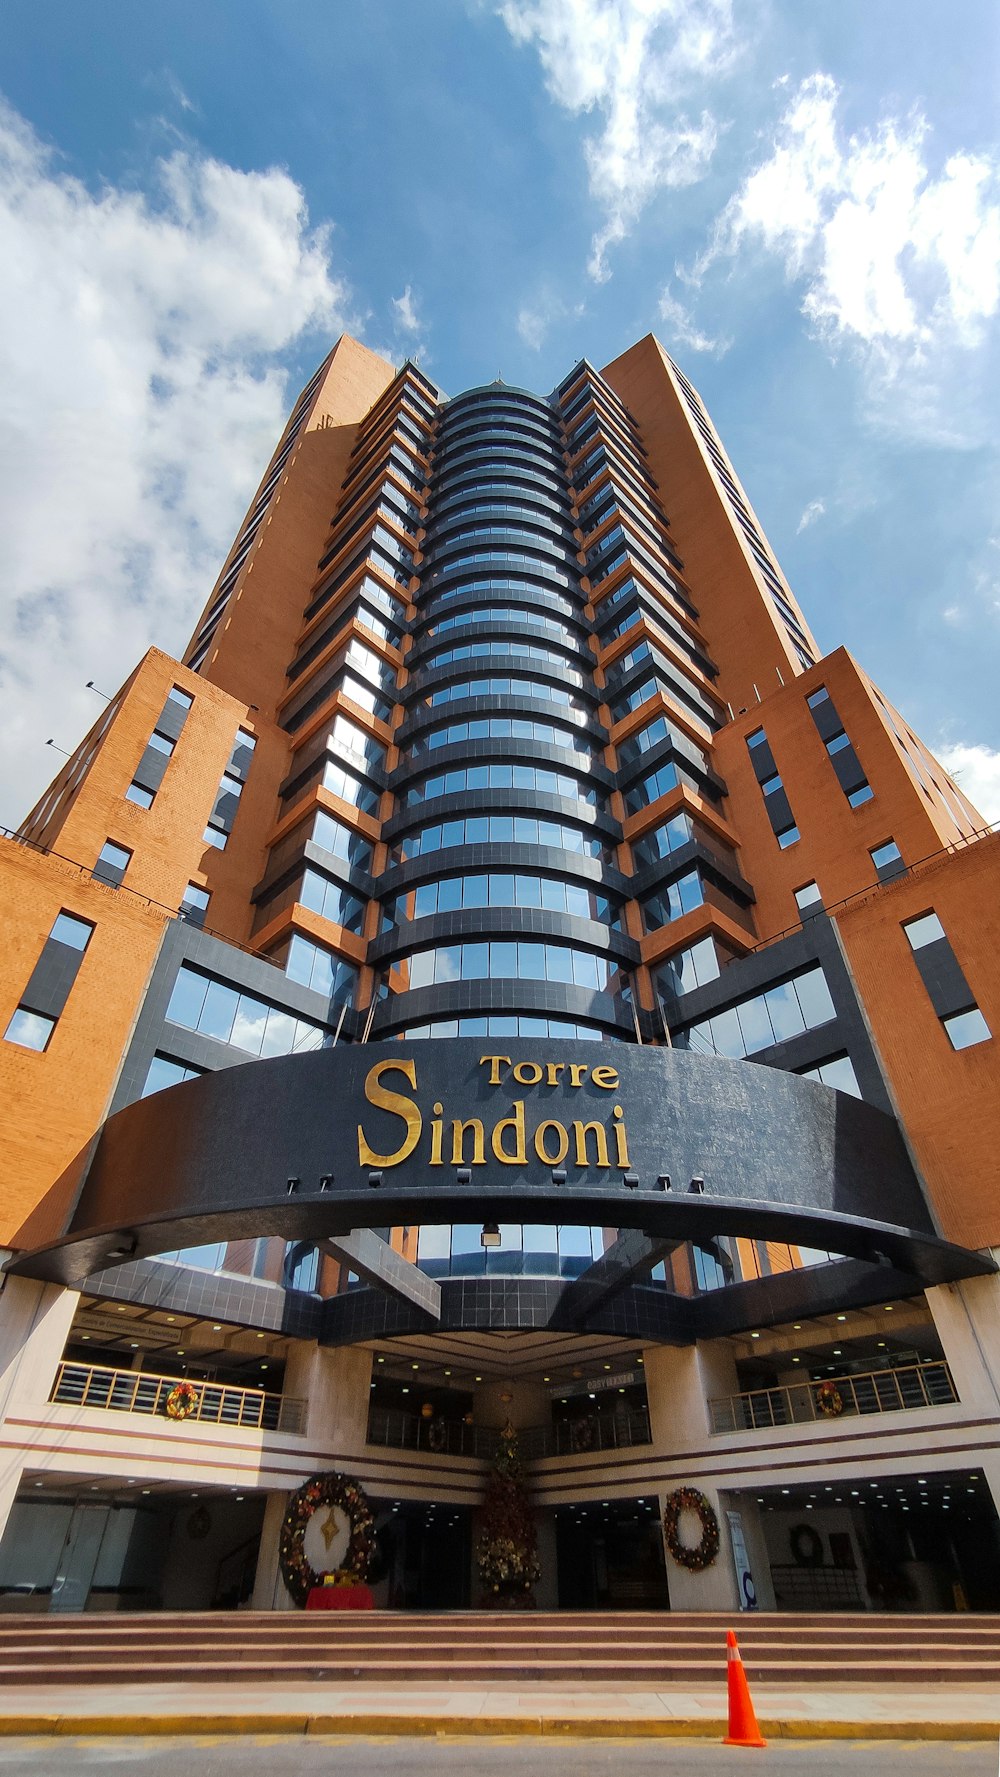 Un edificio alto con un letrero que dice Hotel Sundon